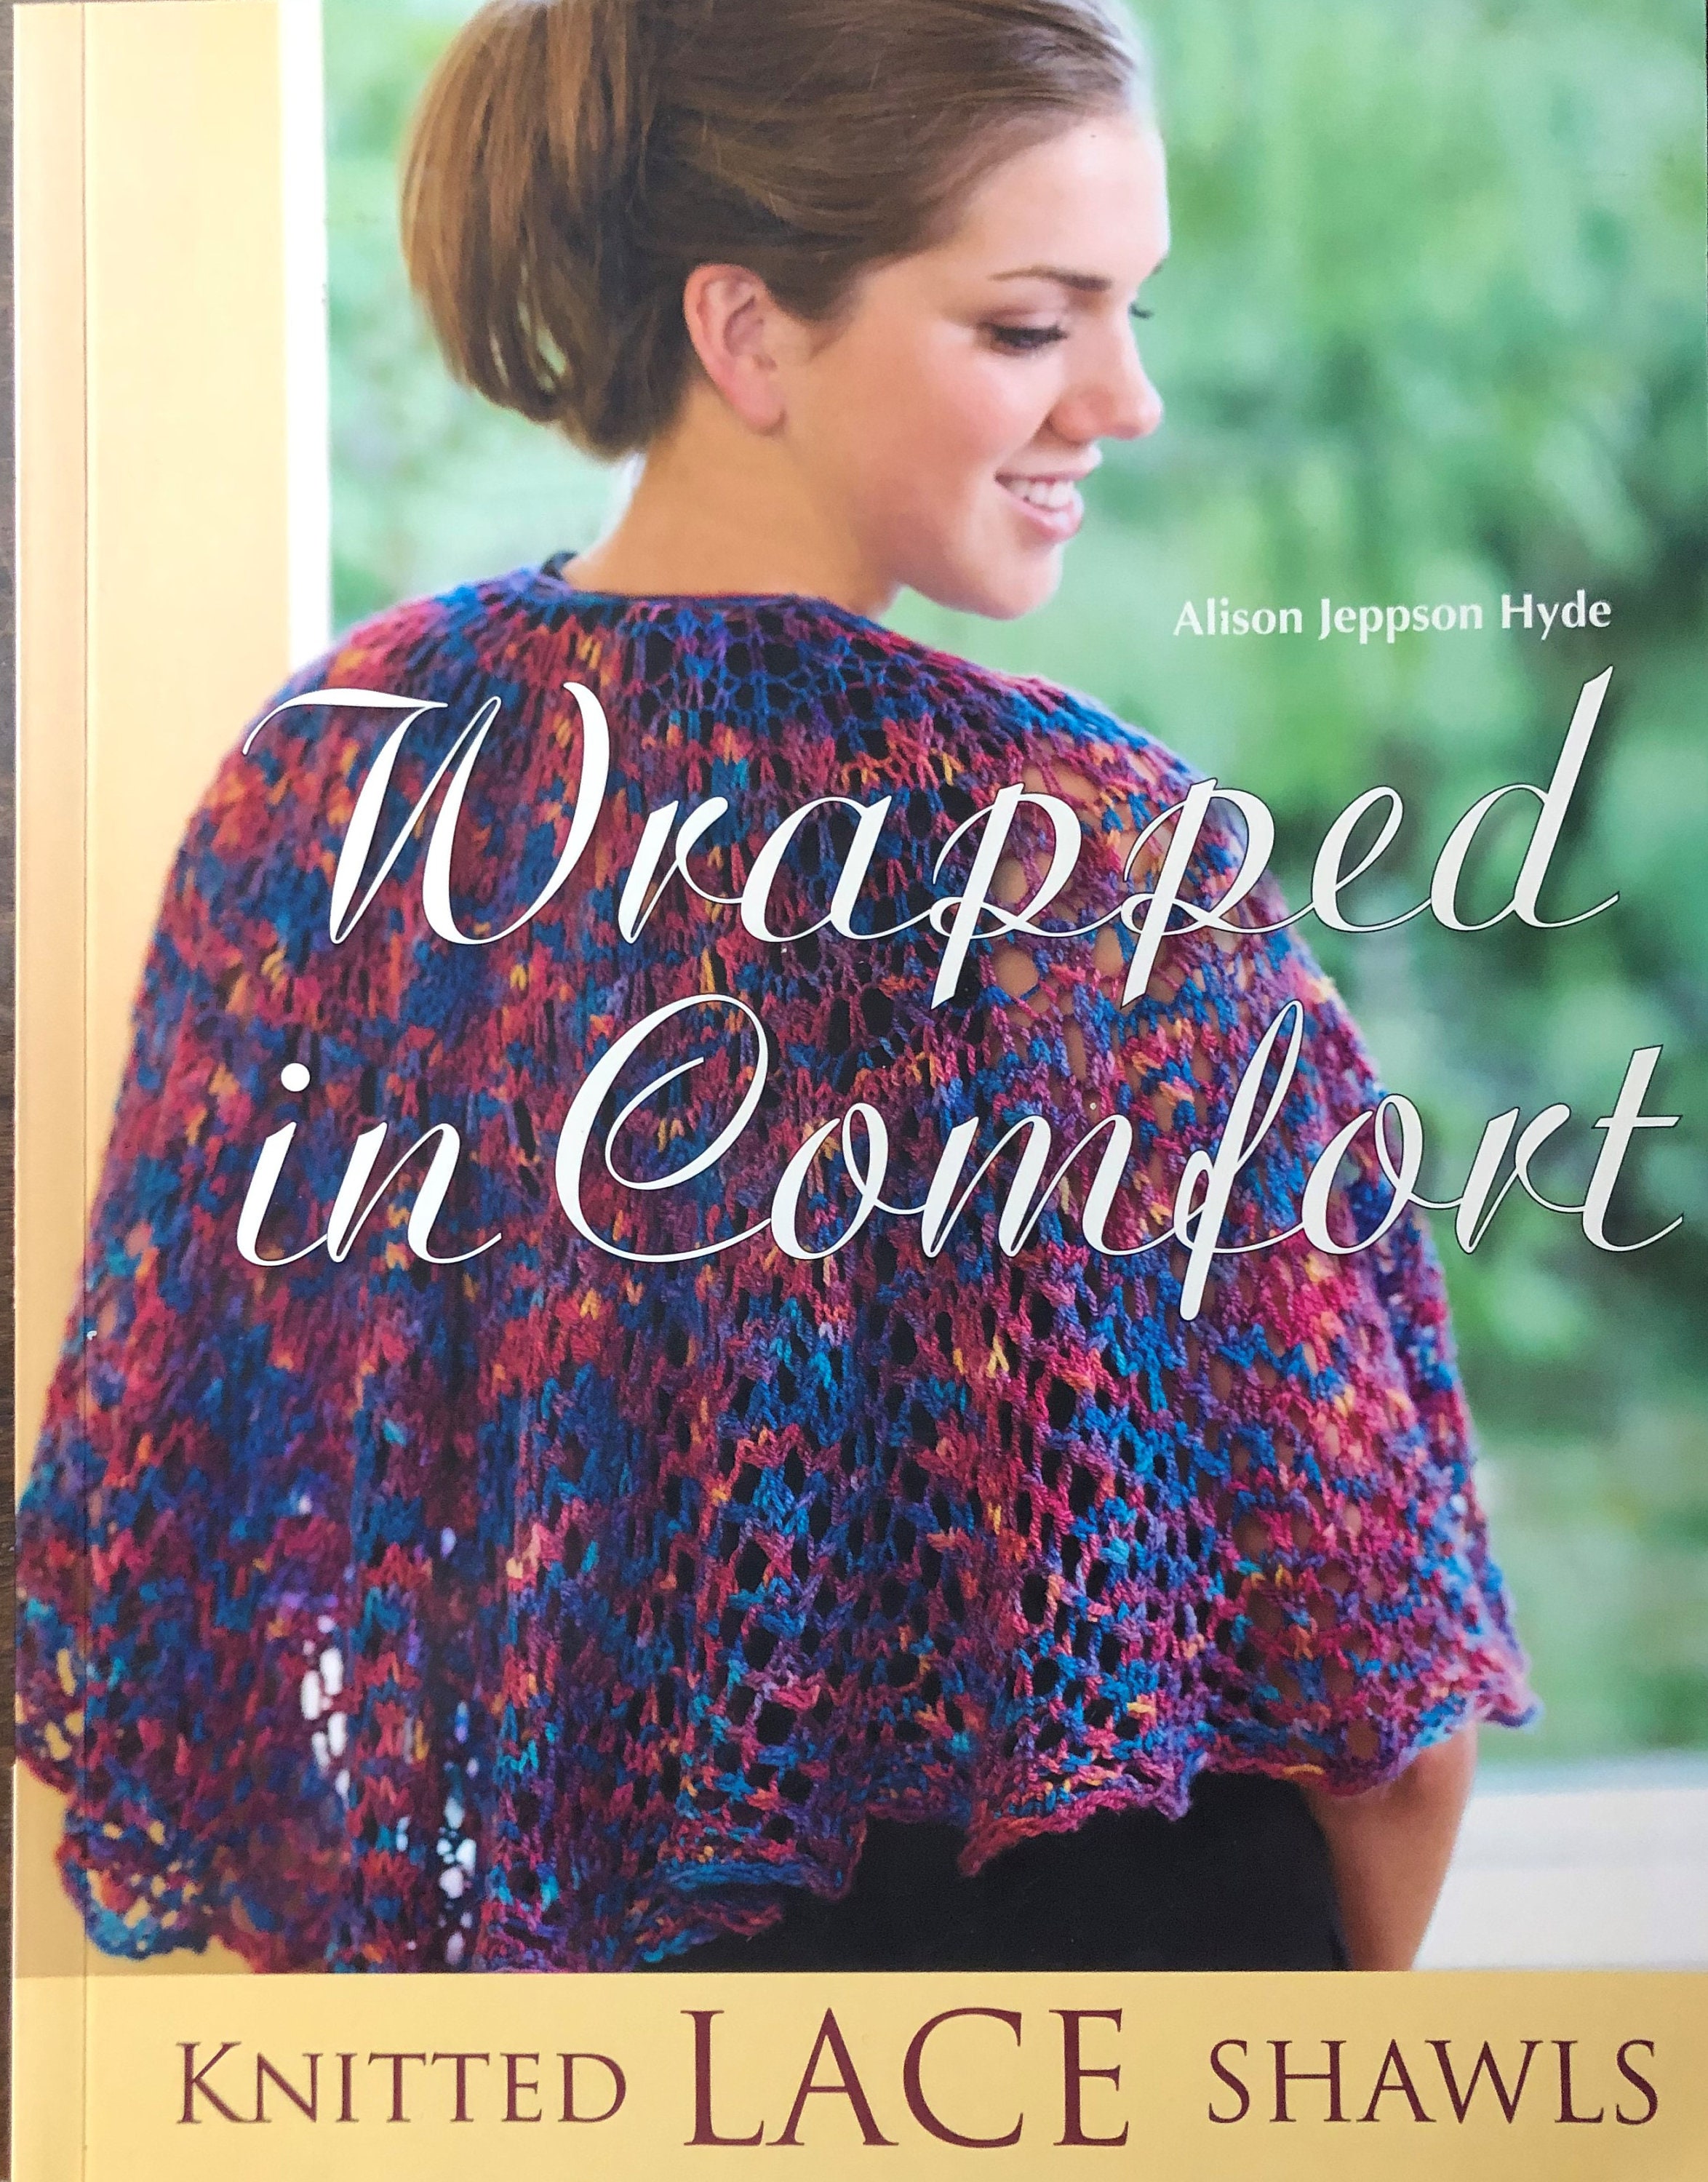 Two Beginner Knitting Books-the Ultimate Knitter's Guide, Kate